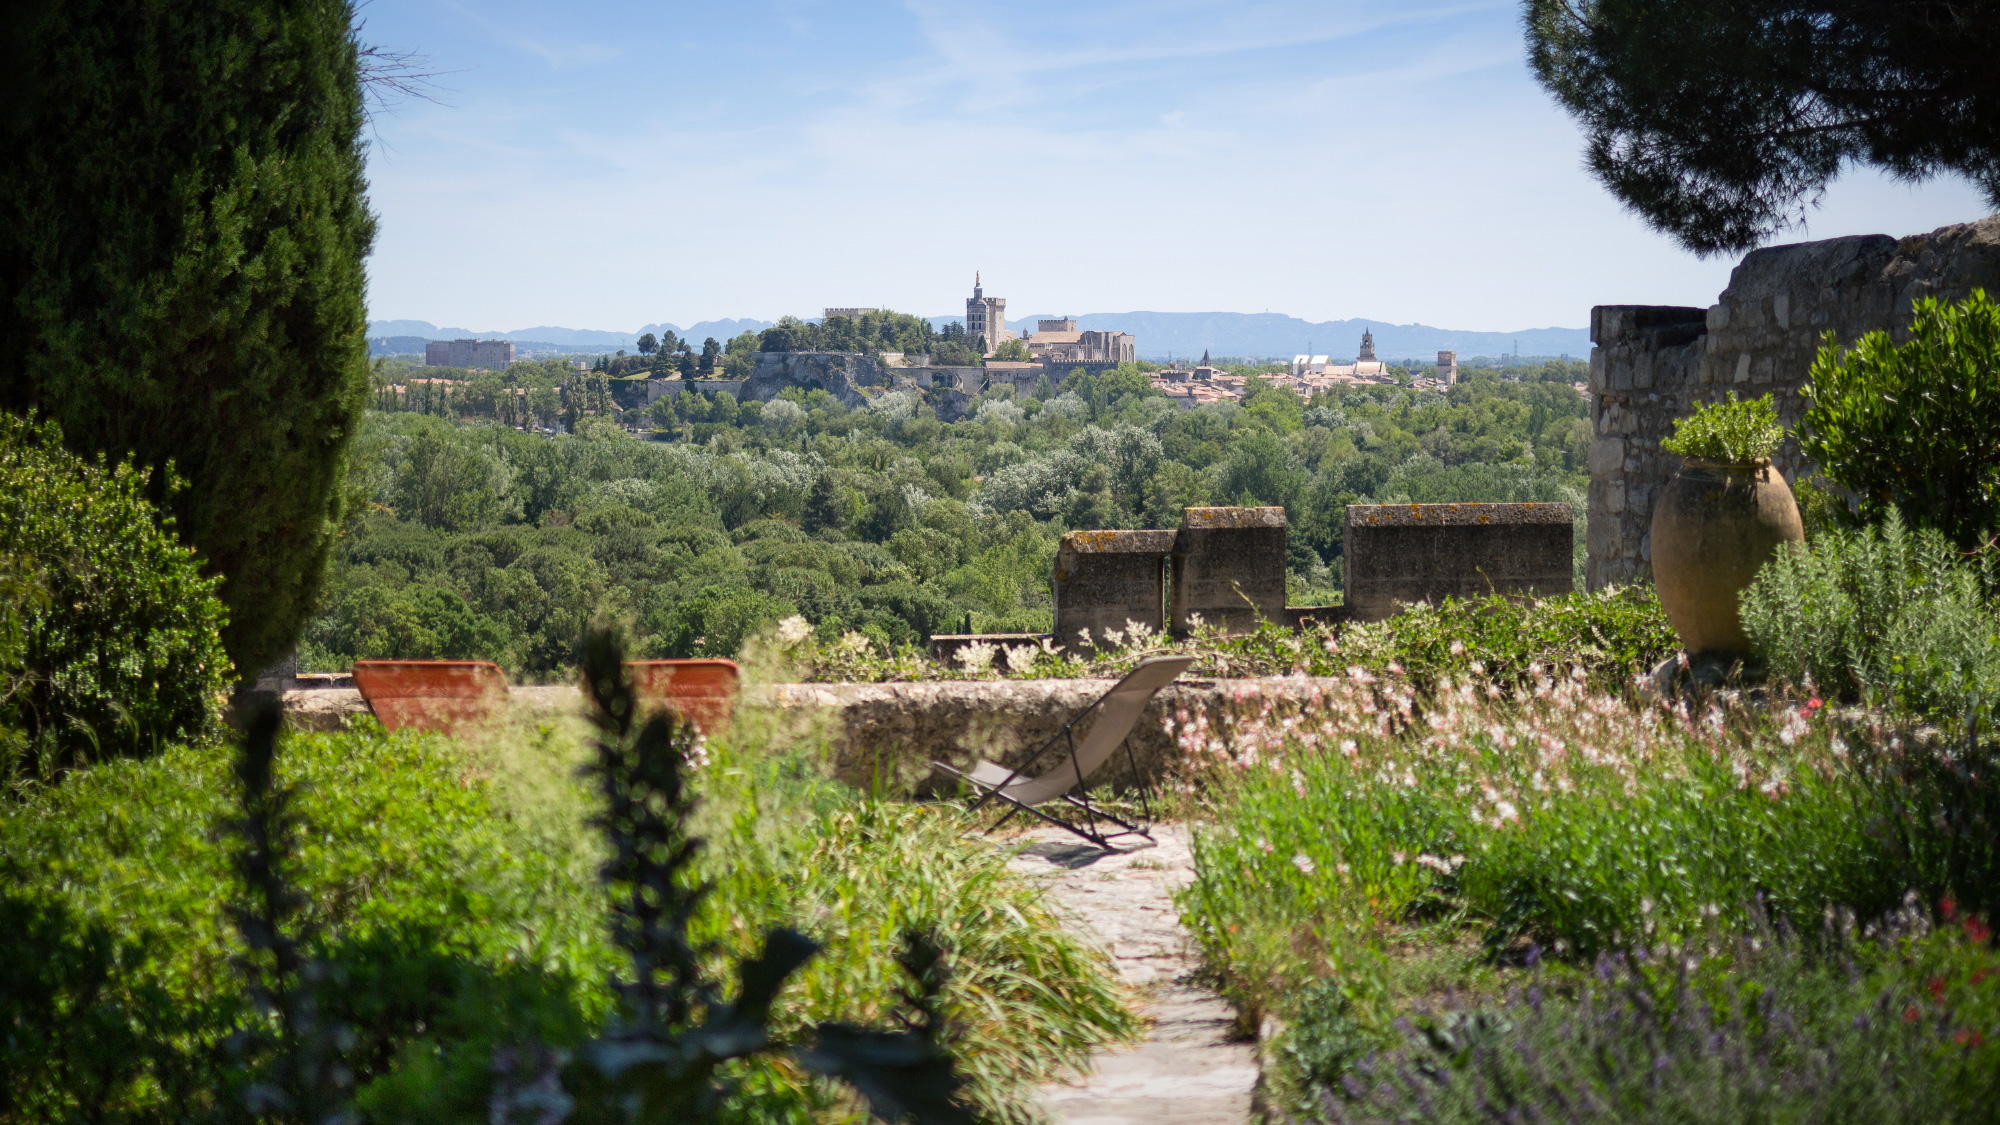 Le charme des jardins de l'abbaye Saint André et sa vue sur Avignon - Villeneuve-les-Avignon